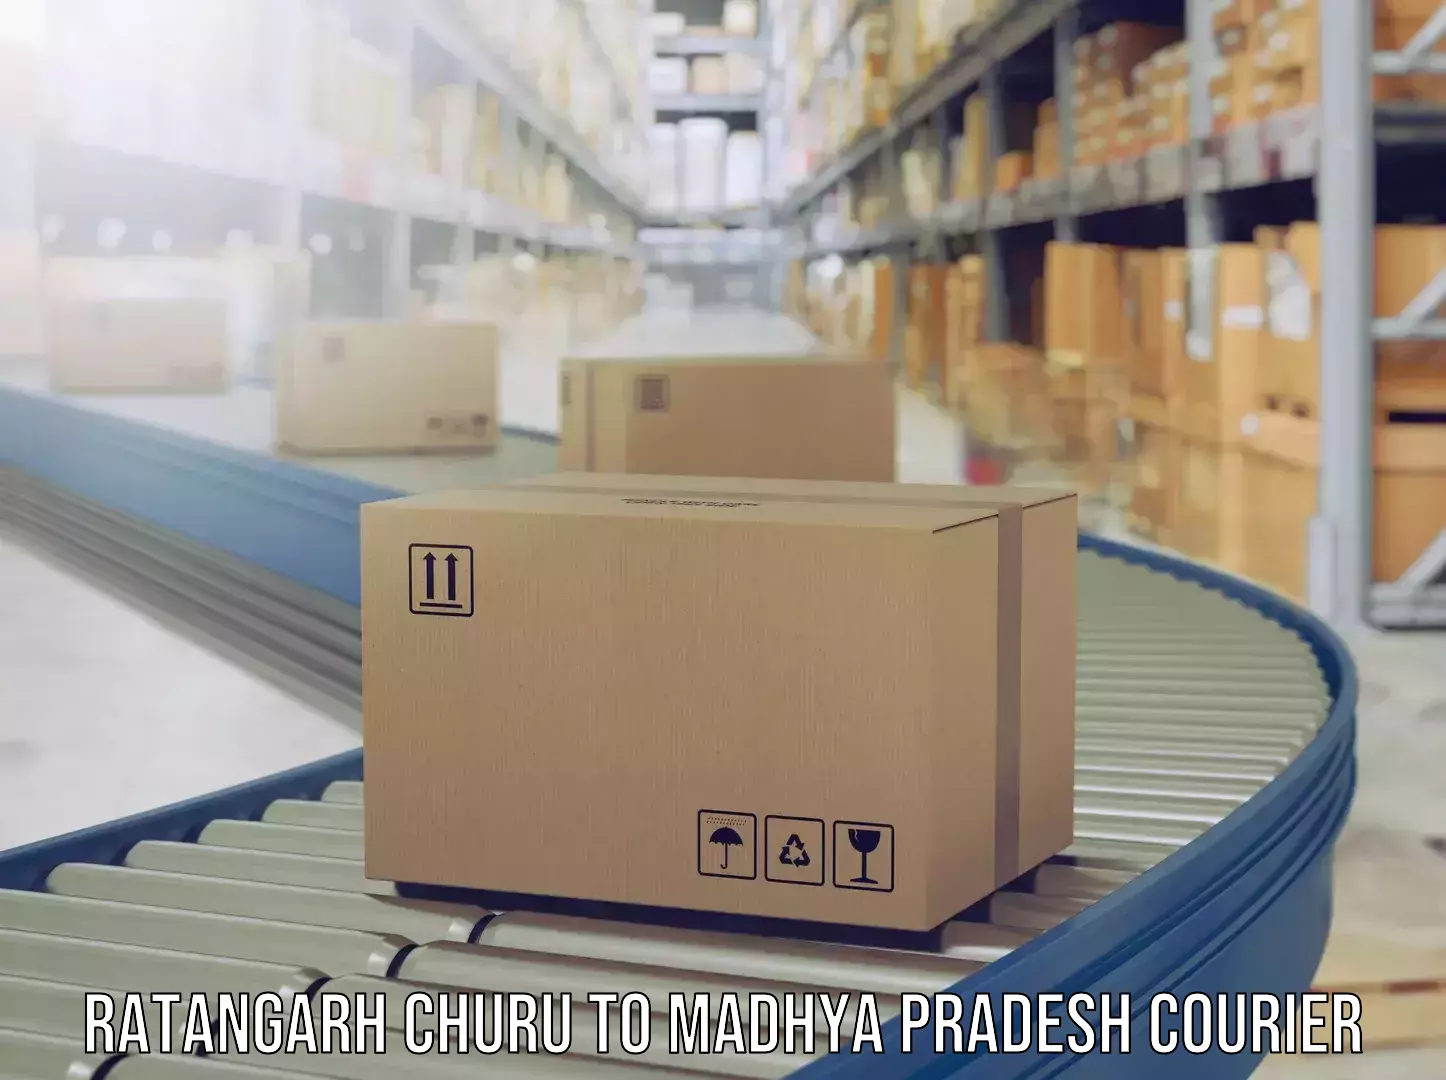 Luggage delivery network Ratangarh Churu to Madhya Pradesh